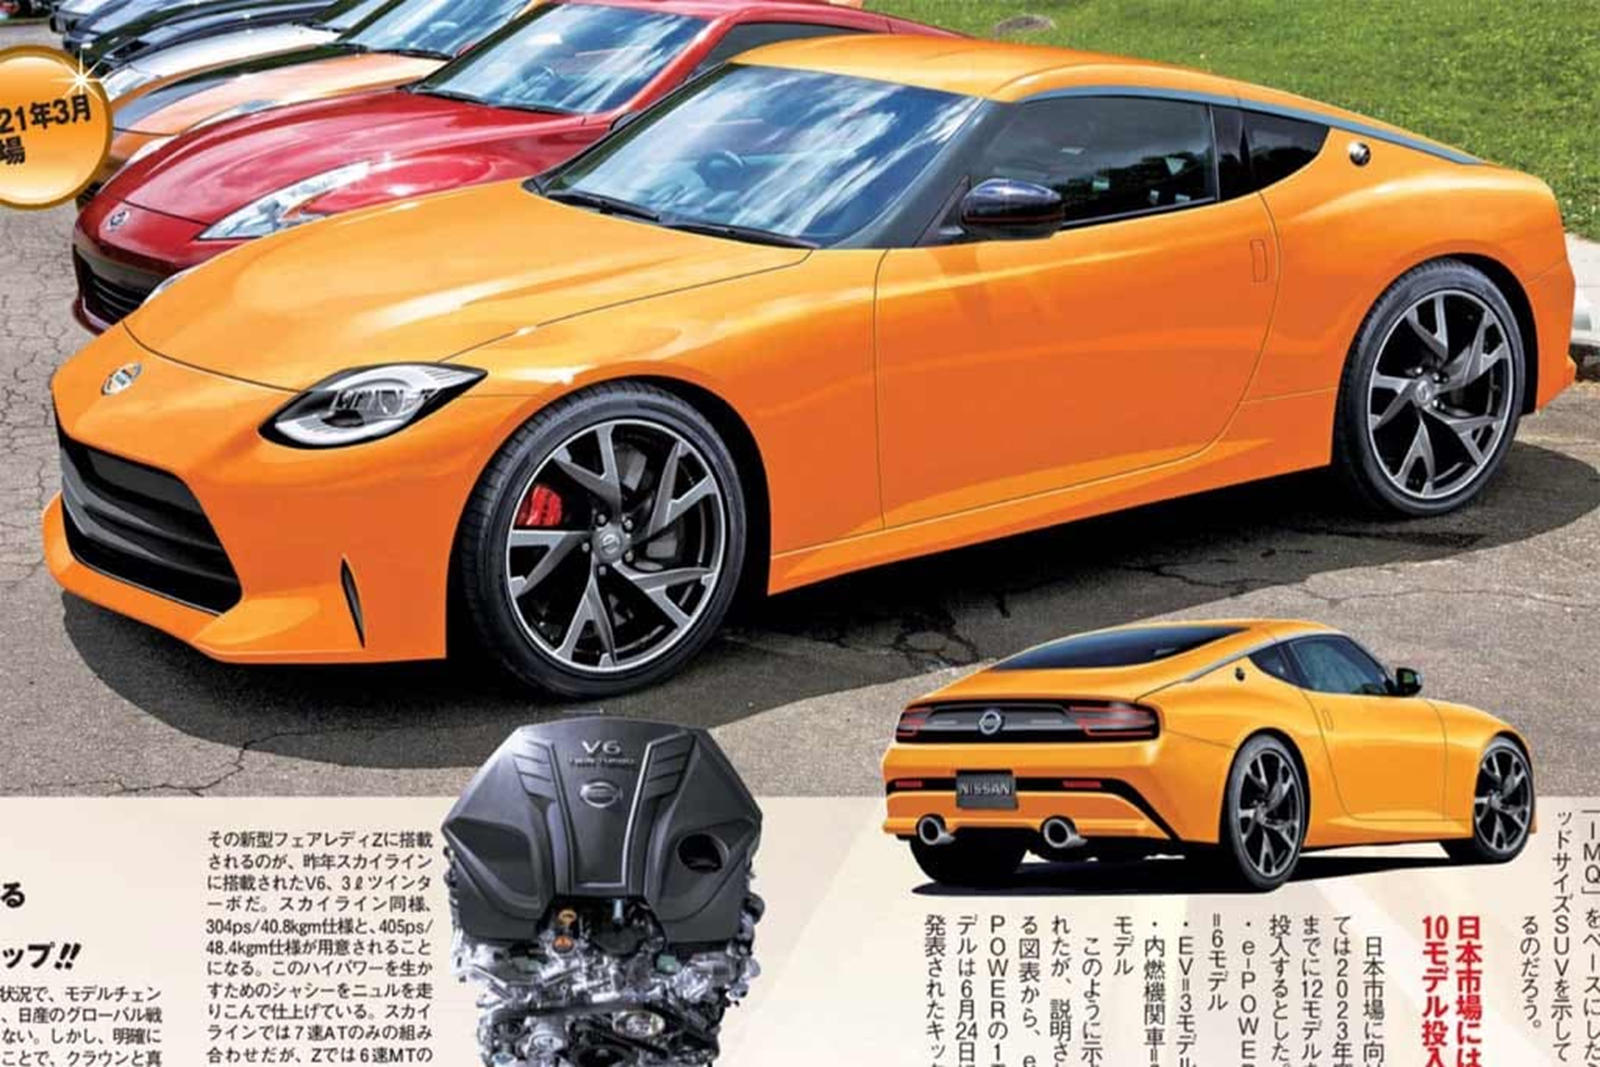 Что касается стиля, мы уже видели визуализации 400Z на основе тизерного видео Nissan. Последние изображения, опубликованные пользователем jpeg.jordann в Instagram, показывают 400Z в оранжевом цвете.